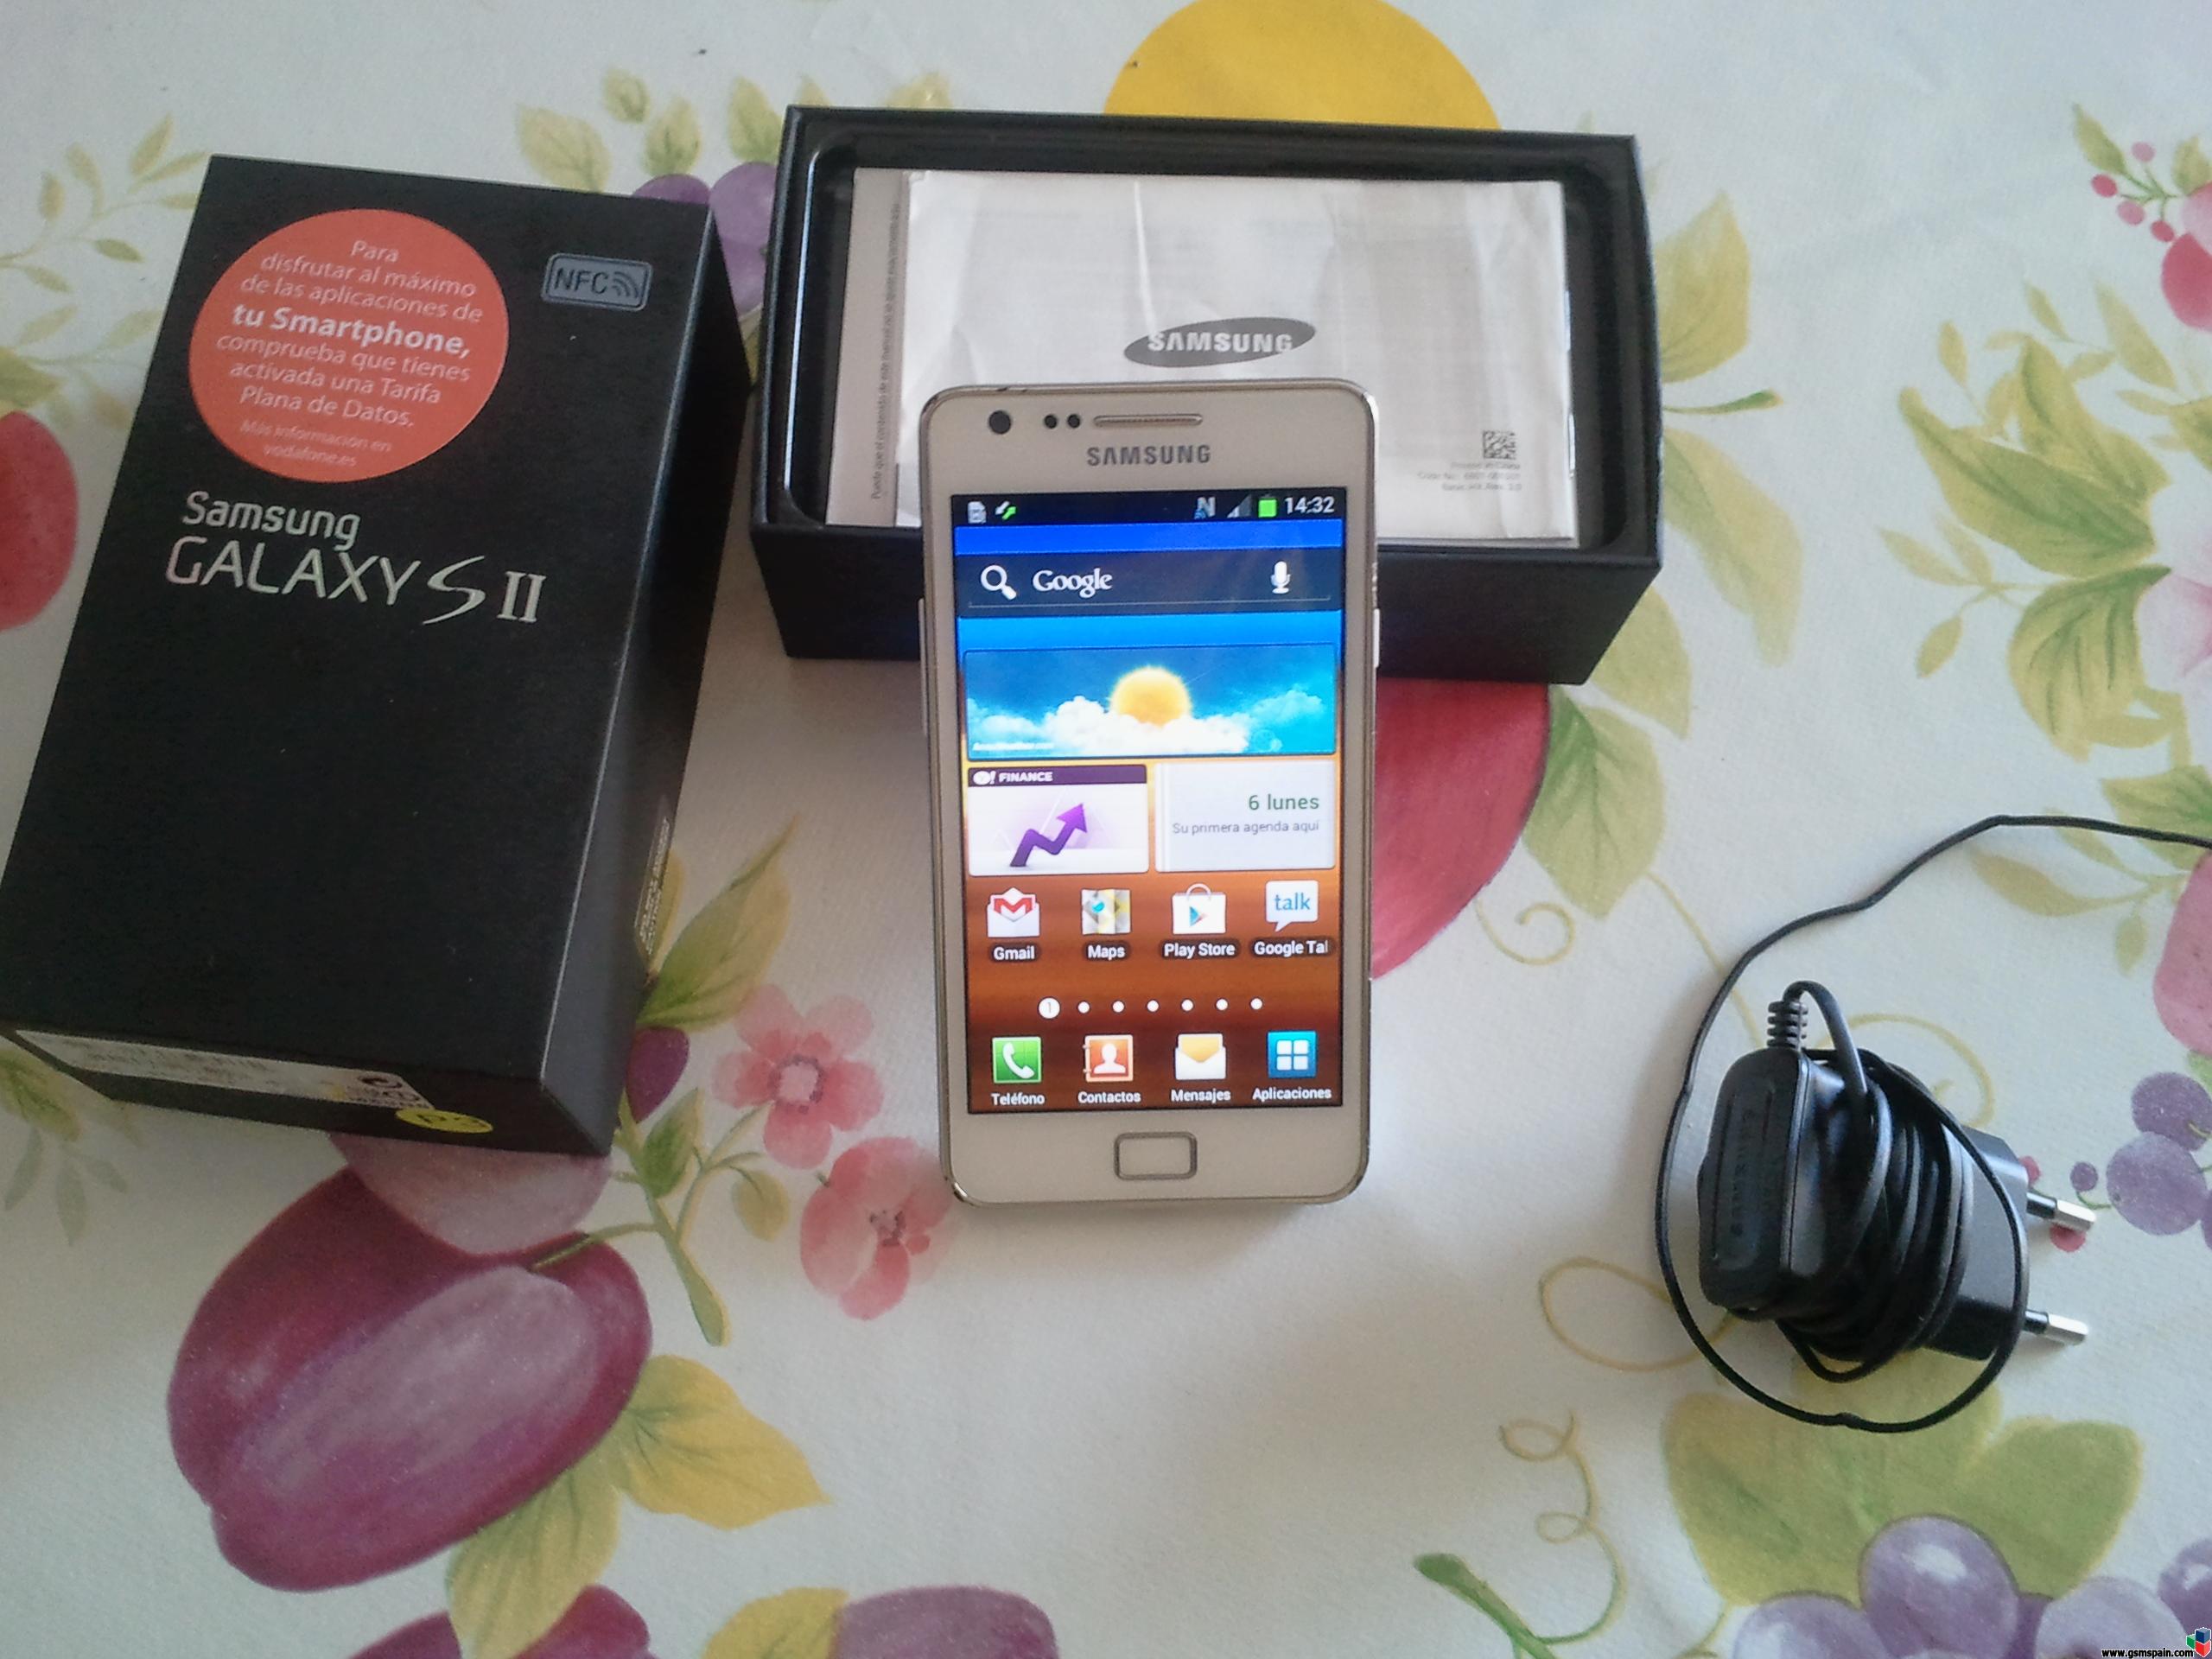 [VENDO] URGENTE, Vendo Samsung Galaxy S 2, Blanco con NFC 16GB muy barato.